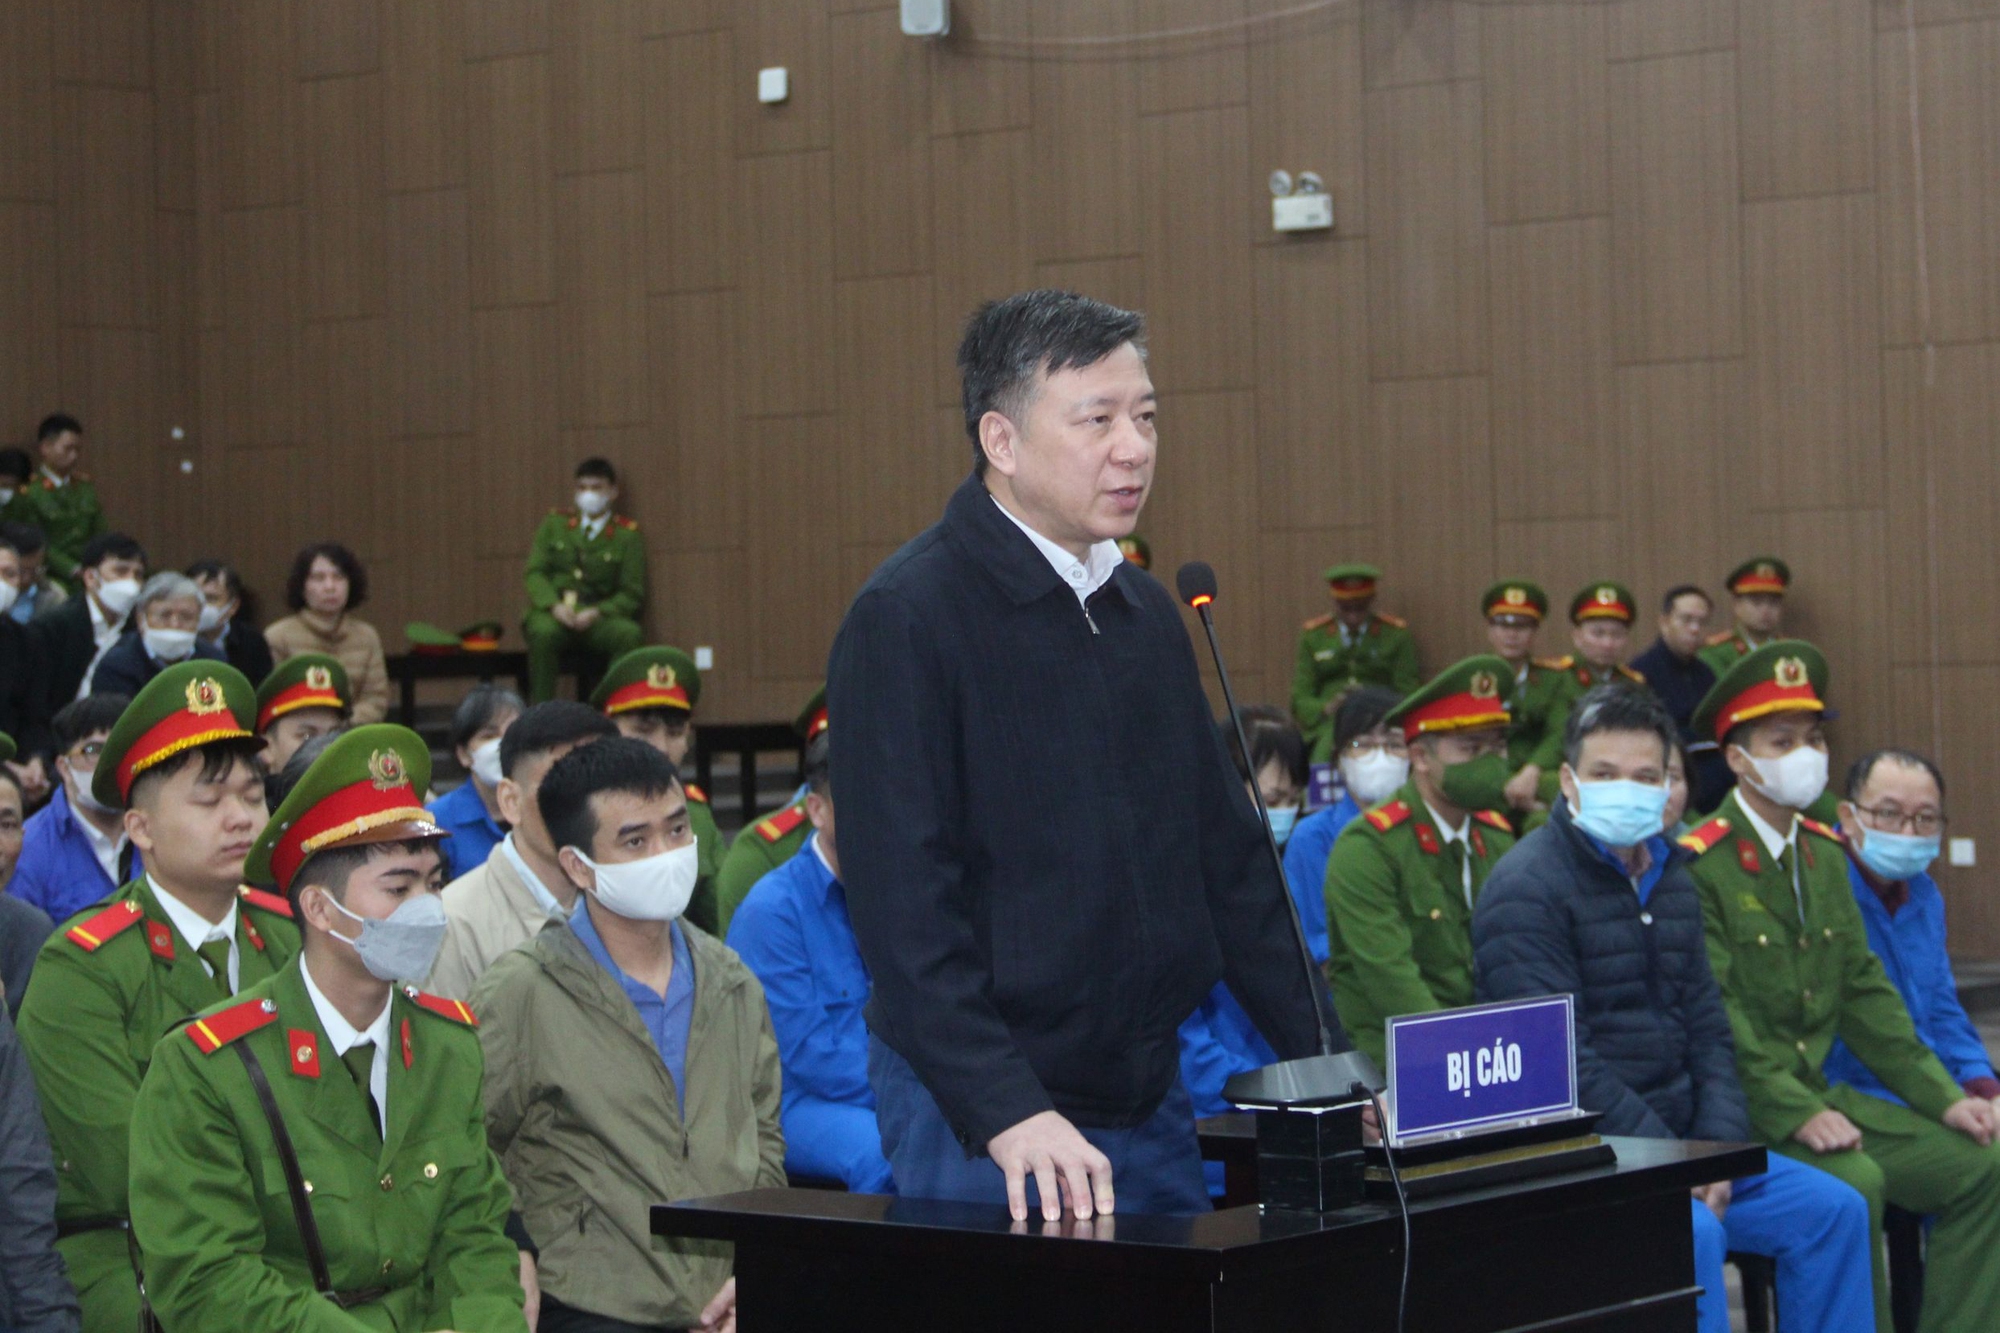 Hơn 100 giáo viên, học sinh xin giảm nhẹ cho cựu Bí thư Phạm Xuân Thăng- Ảnh 1.